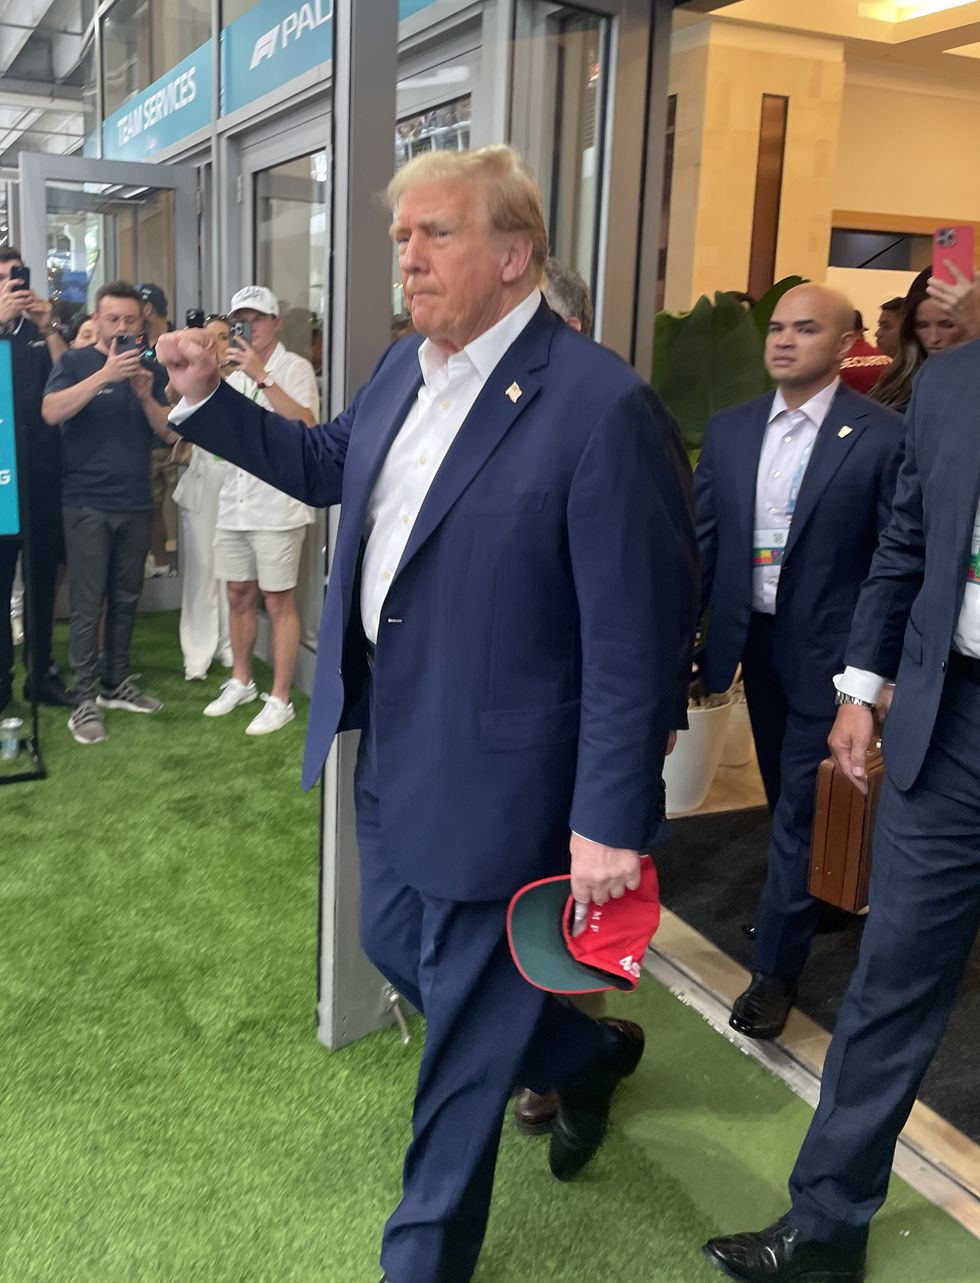 Donald Trump was in attendance at the Miami Grand Prix